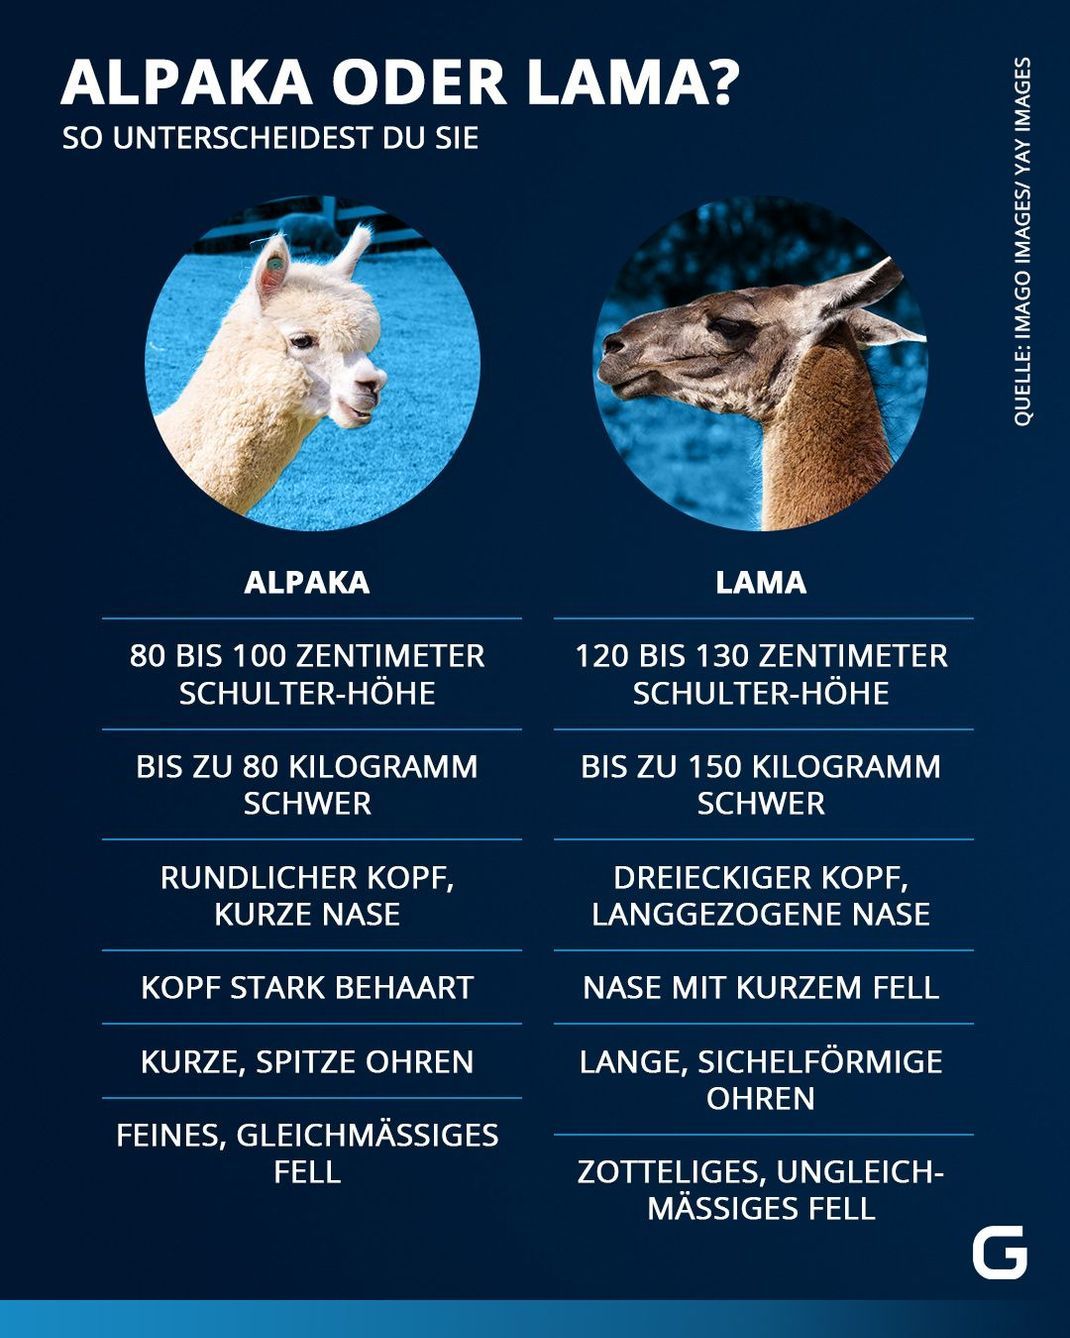 So unterscheiden sich Lamas und Alpakas.